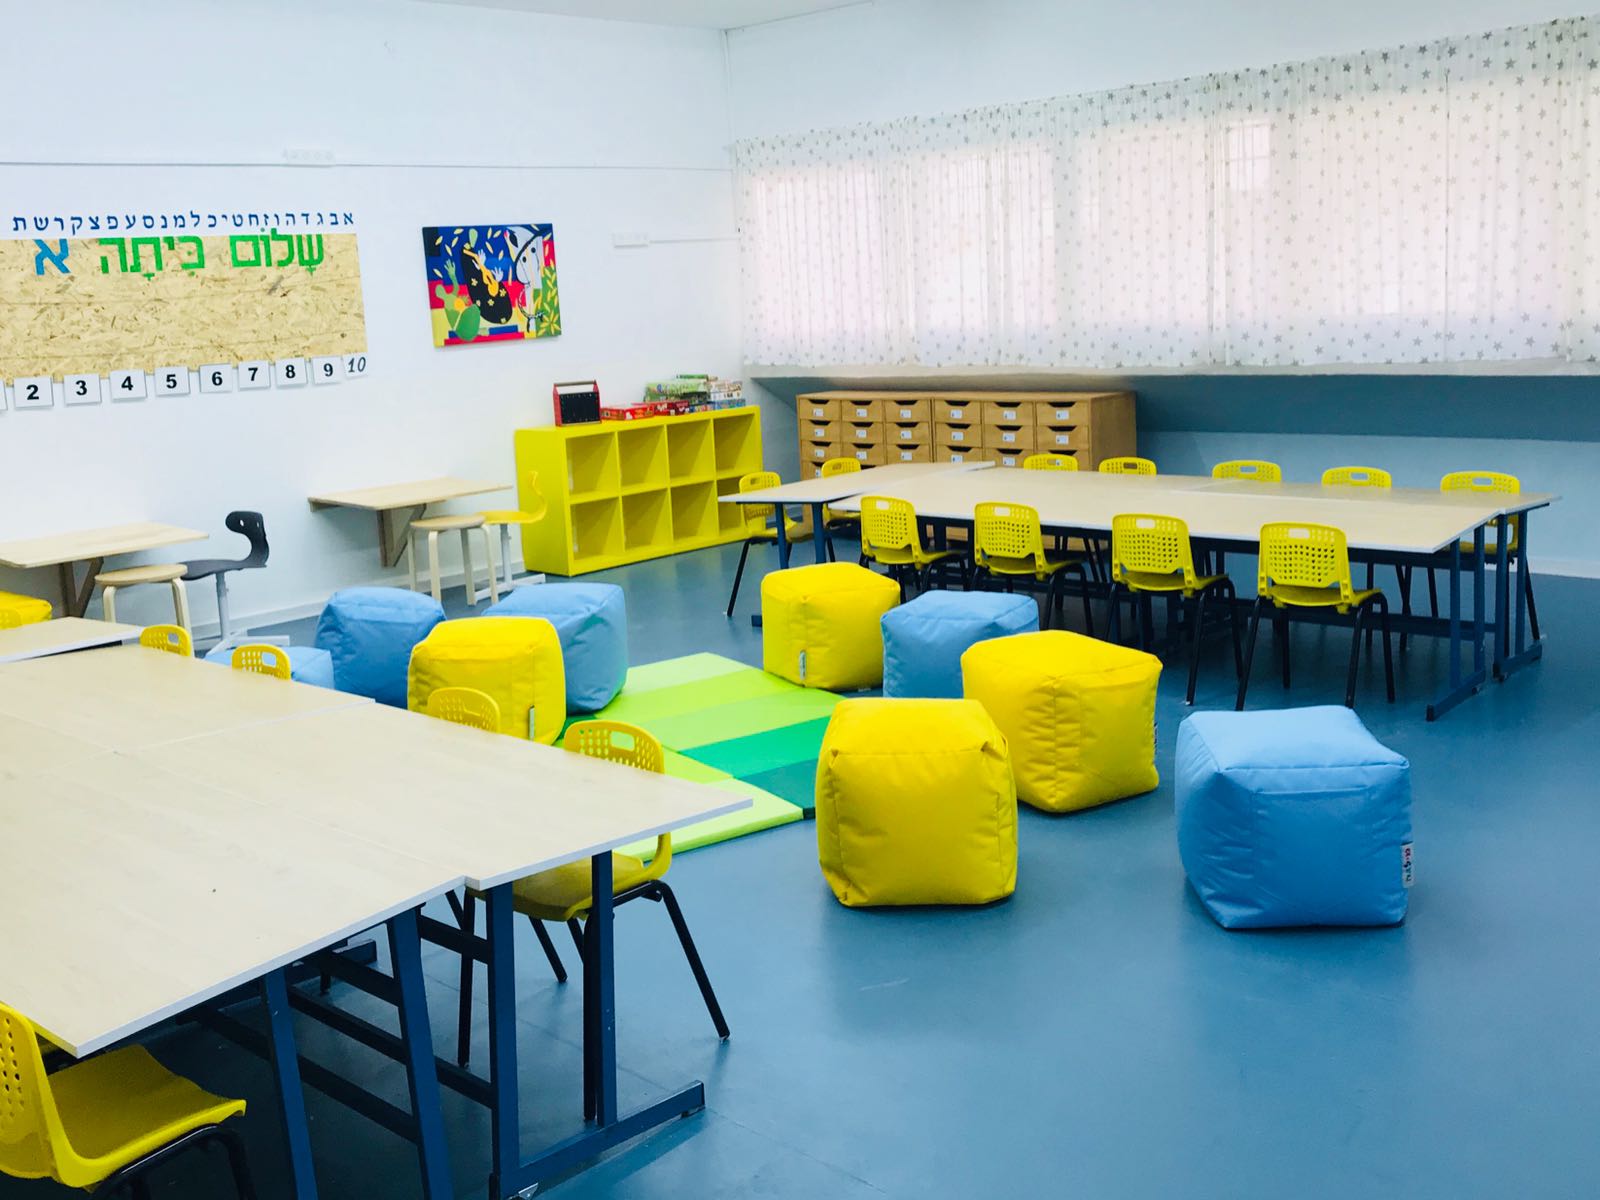 בבית הספר בן גוריון בגבעתיים פרצו את גבולות הכיתה בפיתוח מרחבי למידה חדשים